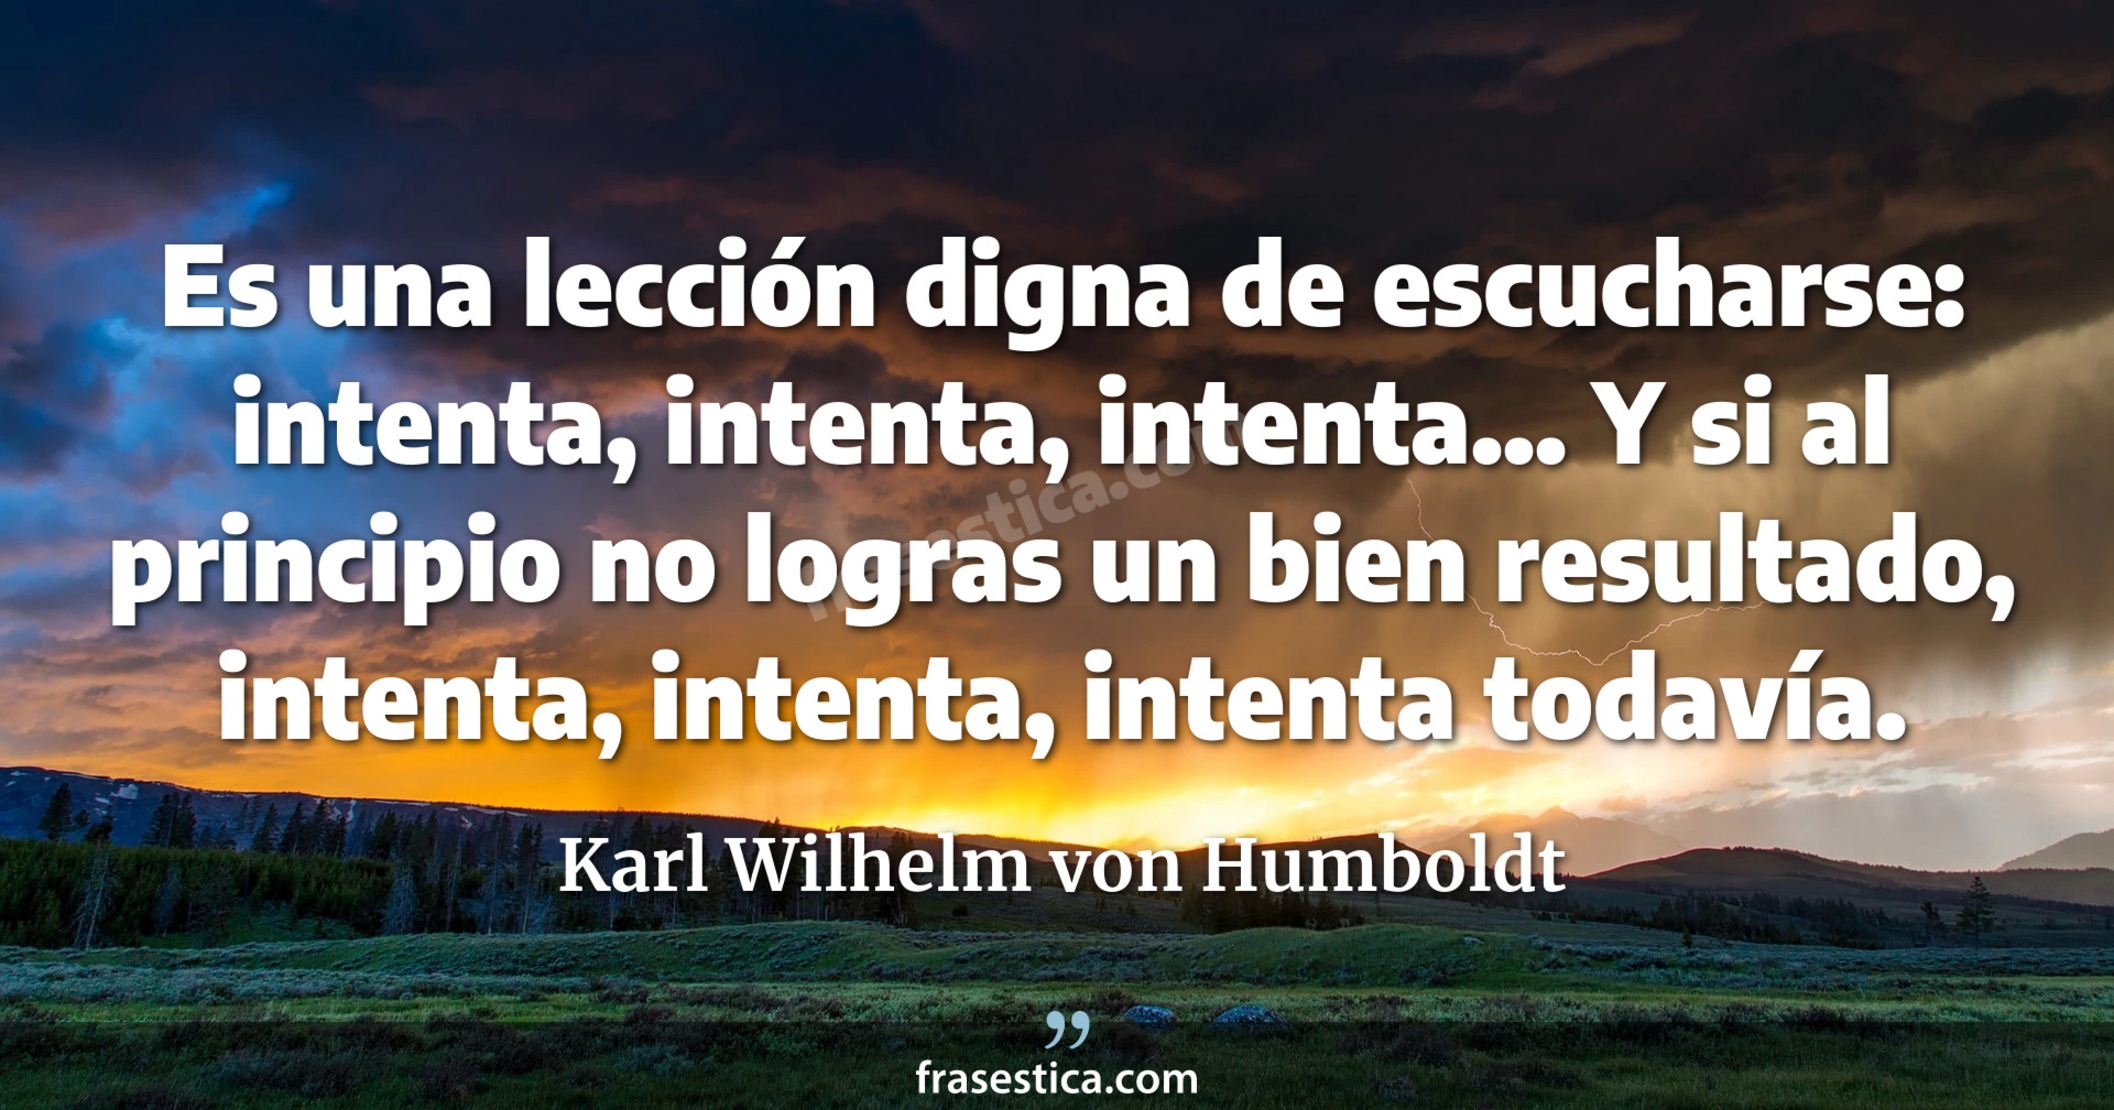 Es una lección digna de escucharse: intenta, intenta, intenta... Y si al principio no logras un bien resultado, intenta, intenta, intenta todavía. - Karl Wilhelm von Humboldt